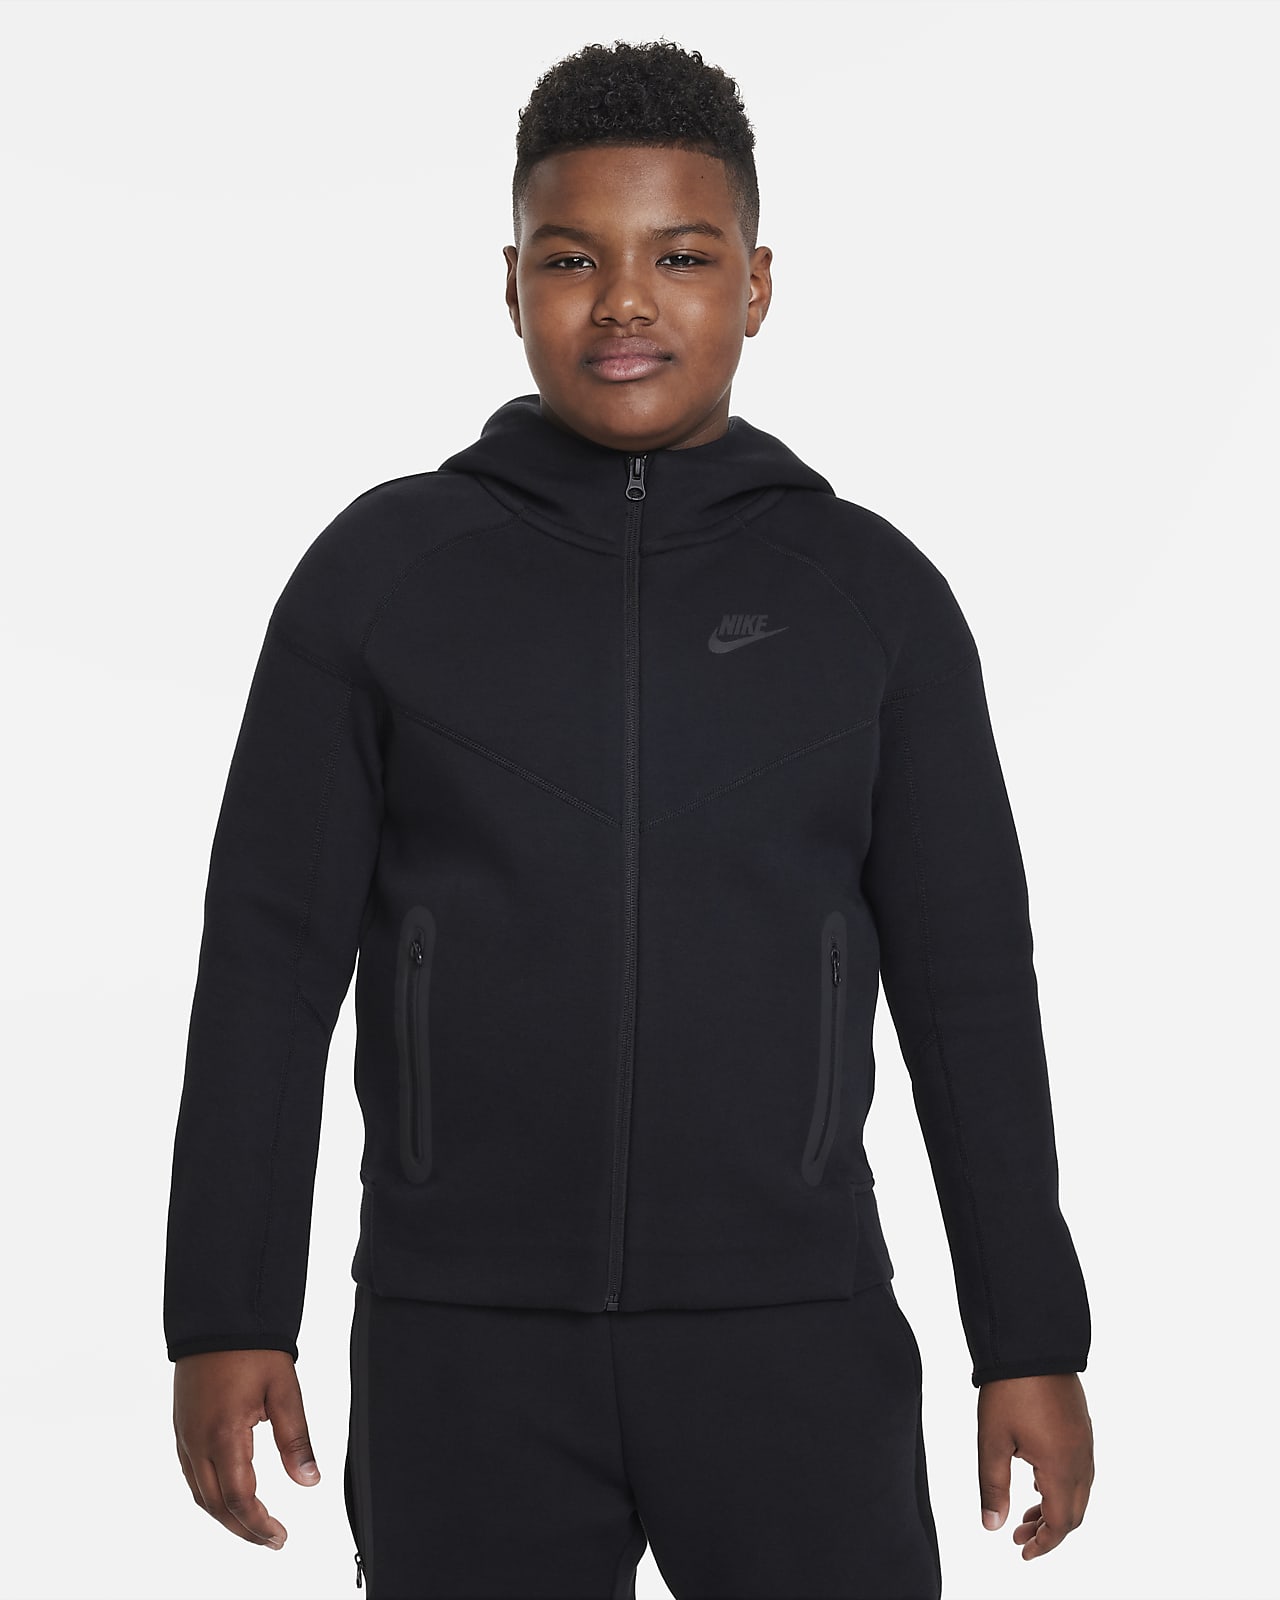 Flísová mikina Nike Sportswear Tech Fleece pro větší děti (chlapce) s dlouhým zipem a kapucí (větší velikost)